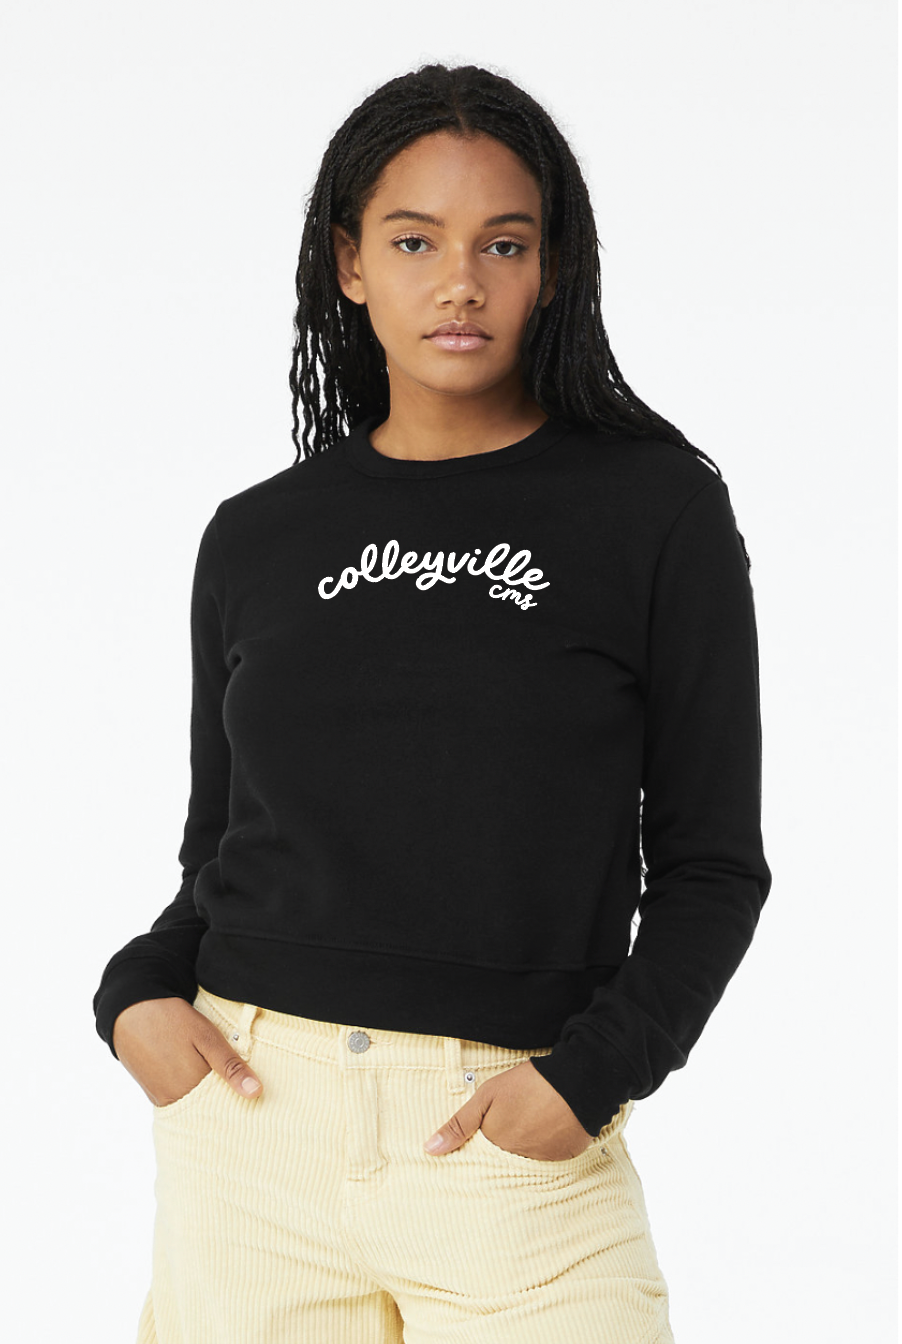 Scripted Women's Crew Sweatshirt in Black